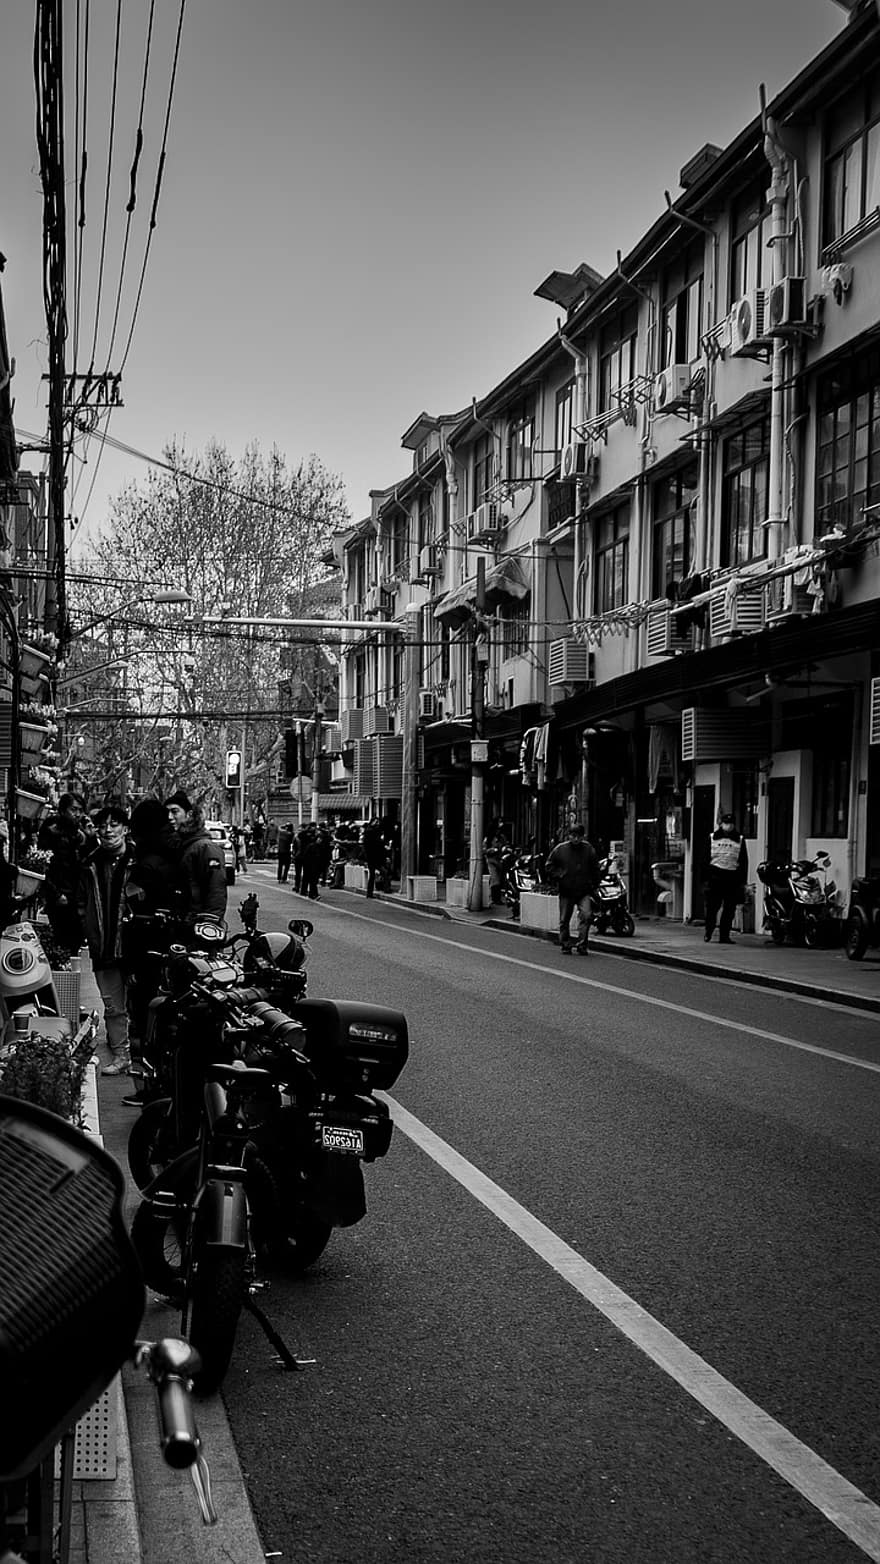 strada, Via Yongkang, monocromatico, urbano, bianco e nero, vita di città, architettura, traffico, esterno dell'edificio, mezzi di trasporto, viaggio